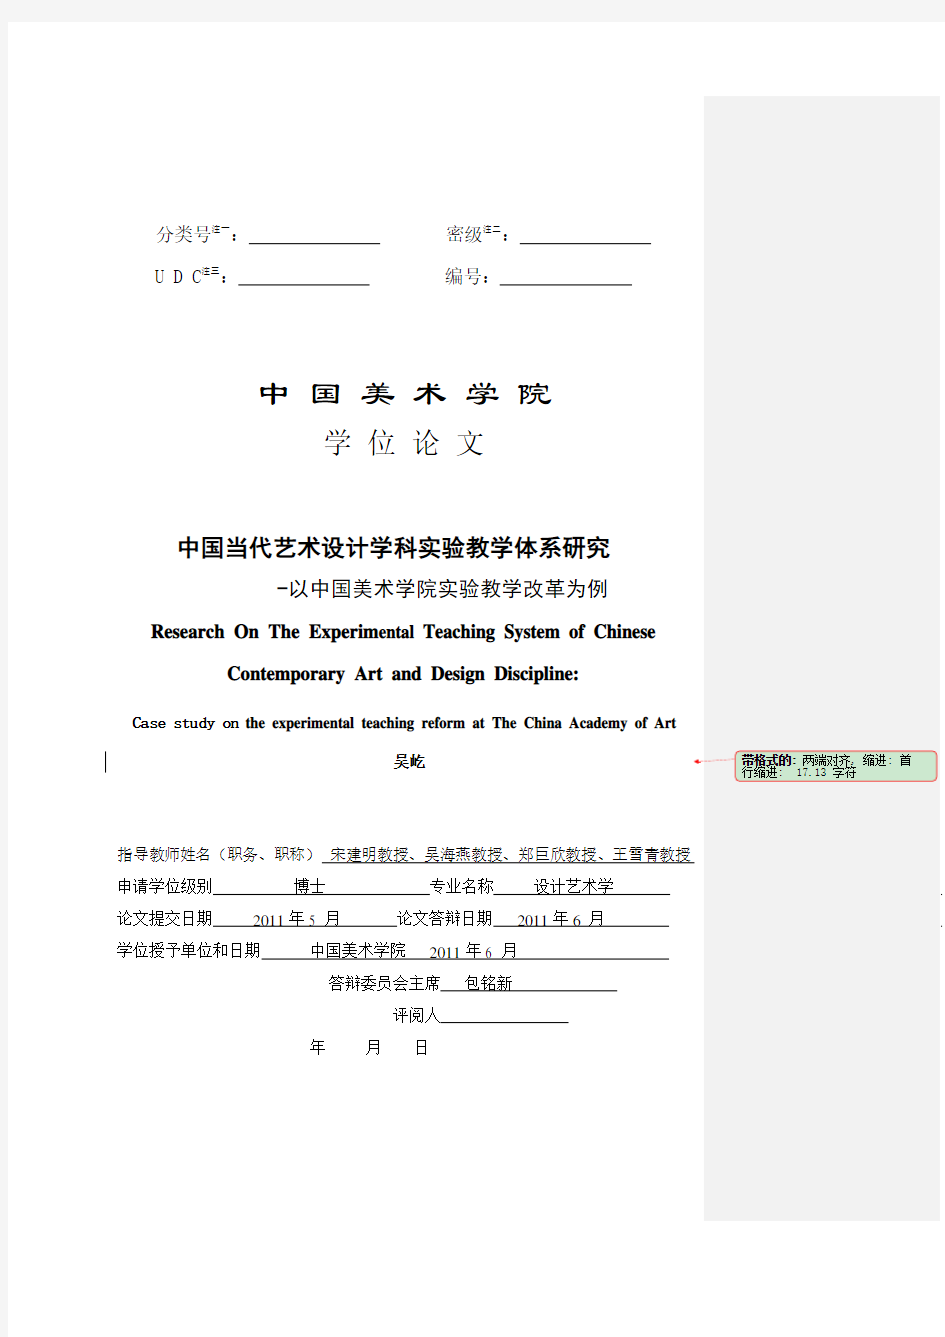 中国当代艺术设计学科实验教学体系研究──以中国美术学院实验教学改革为例